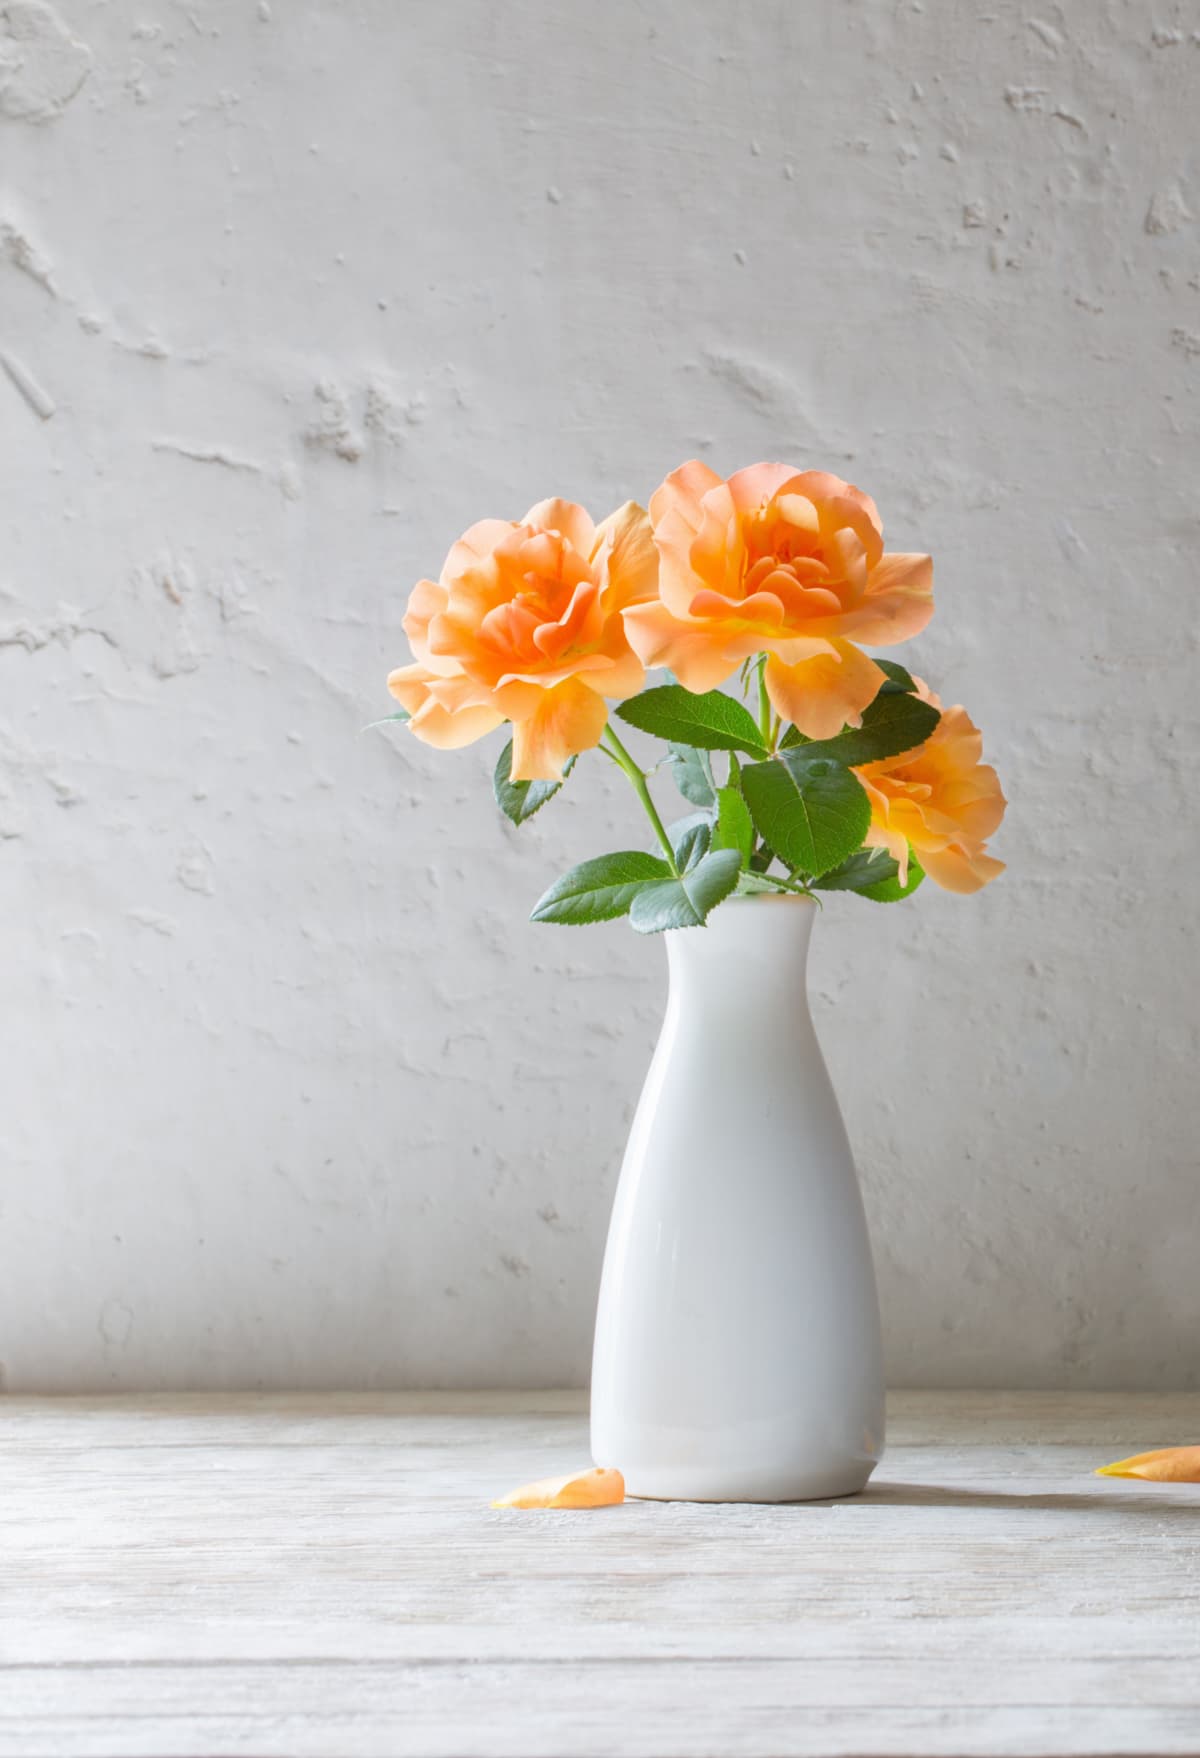 Faux orange flowers in a vase